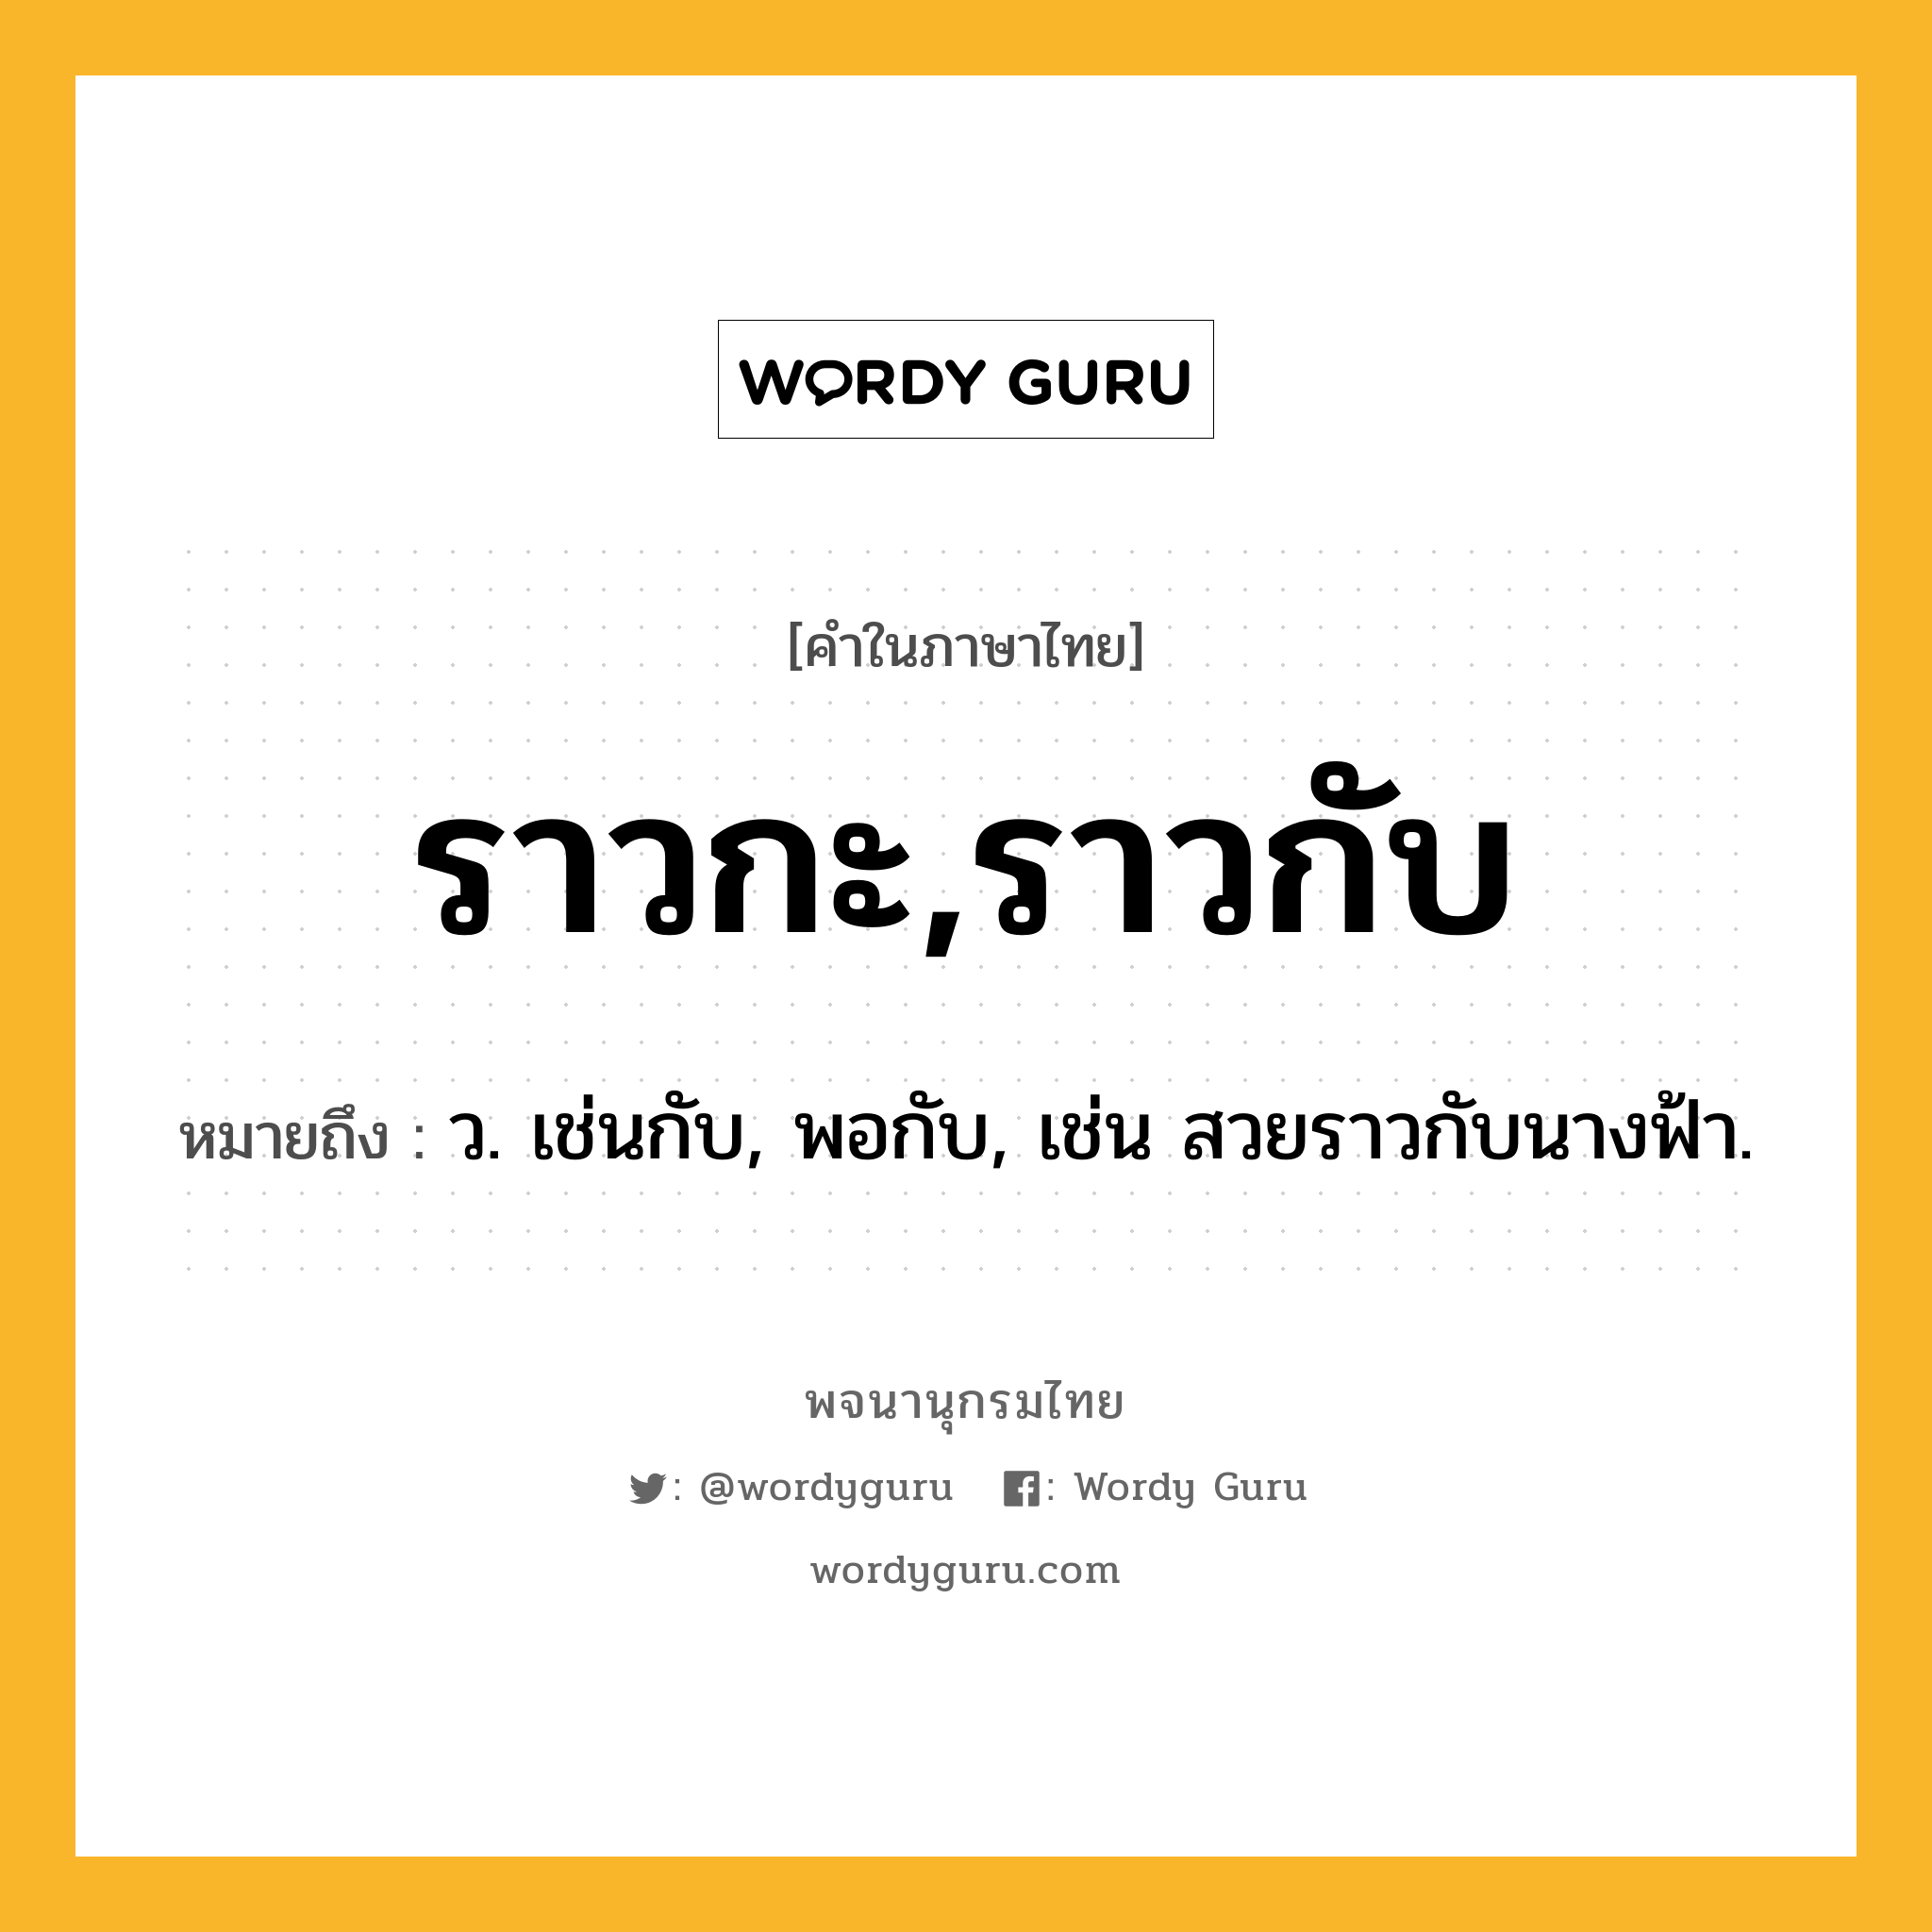 ราวกะ,ราวกับ หมายถึงอะไร?, คำในภาษาไทย ราวกะ,ราวกับ หมายถึง ว. เช่นกับ, พอกับ, เช่น สวยราวกับนางฟ้า.